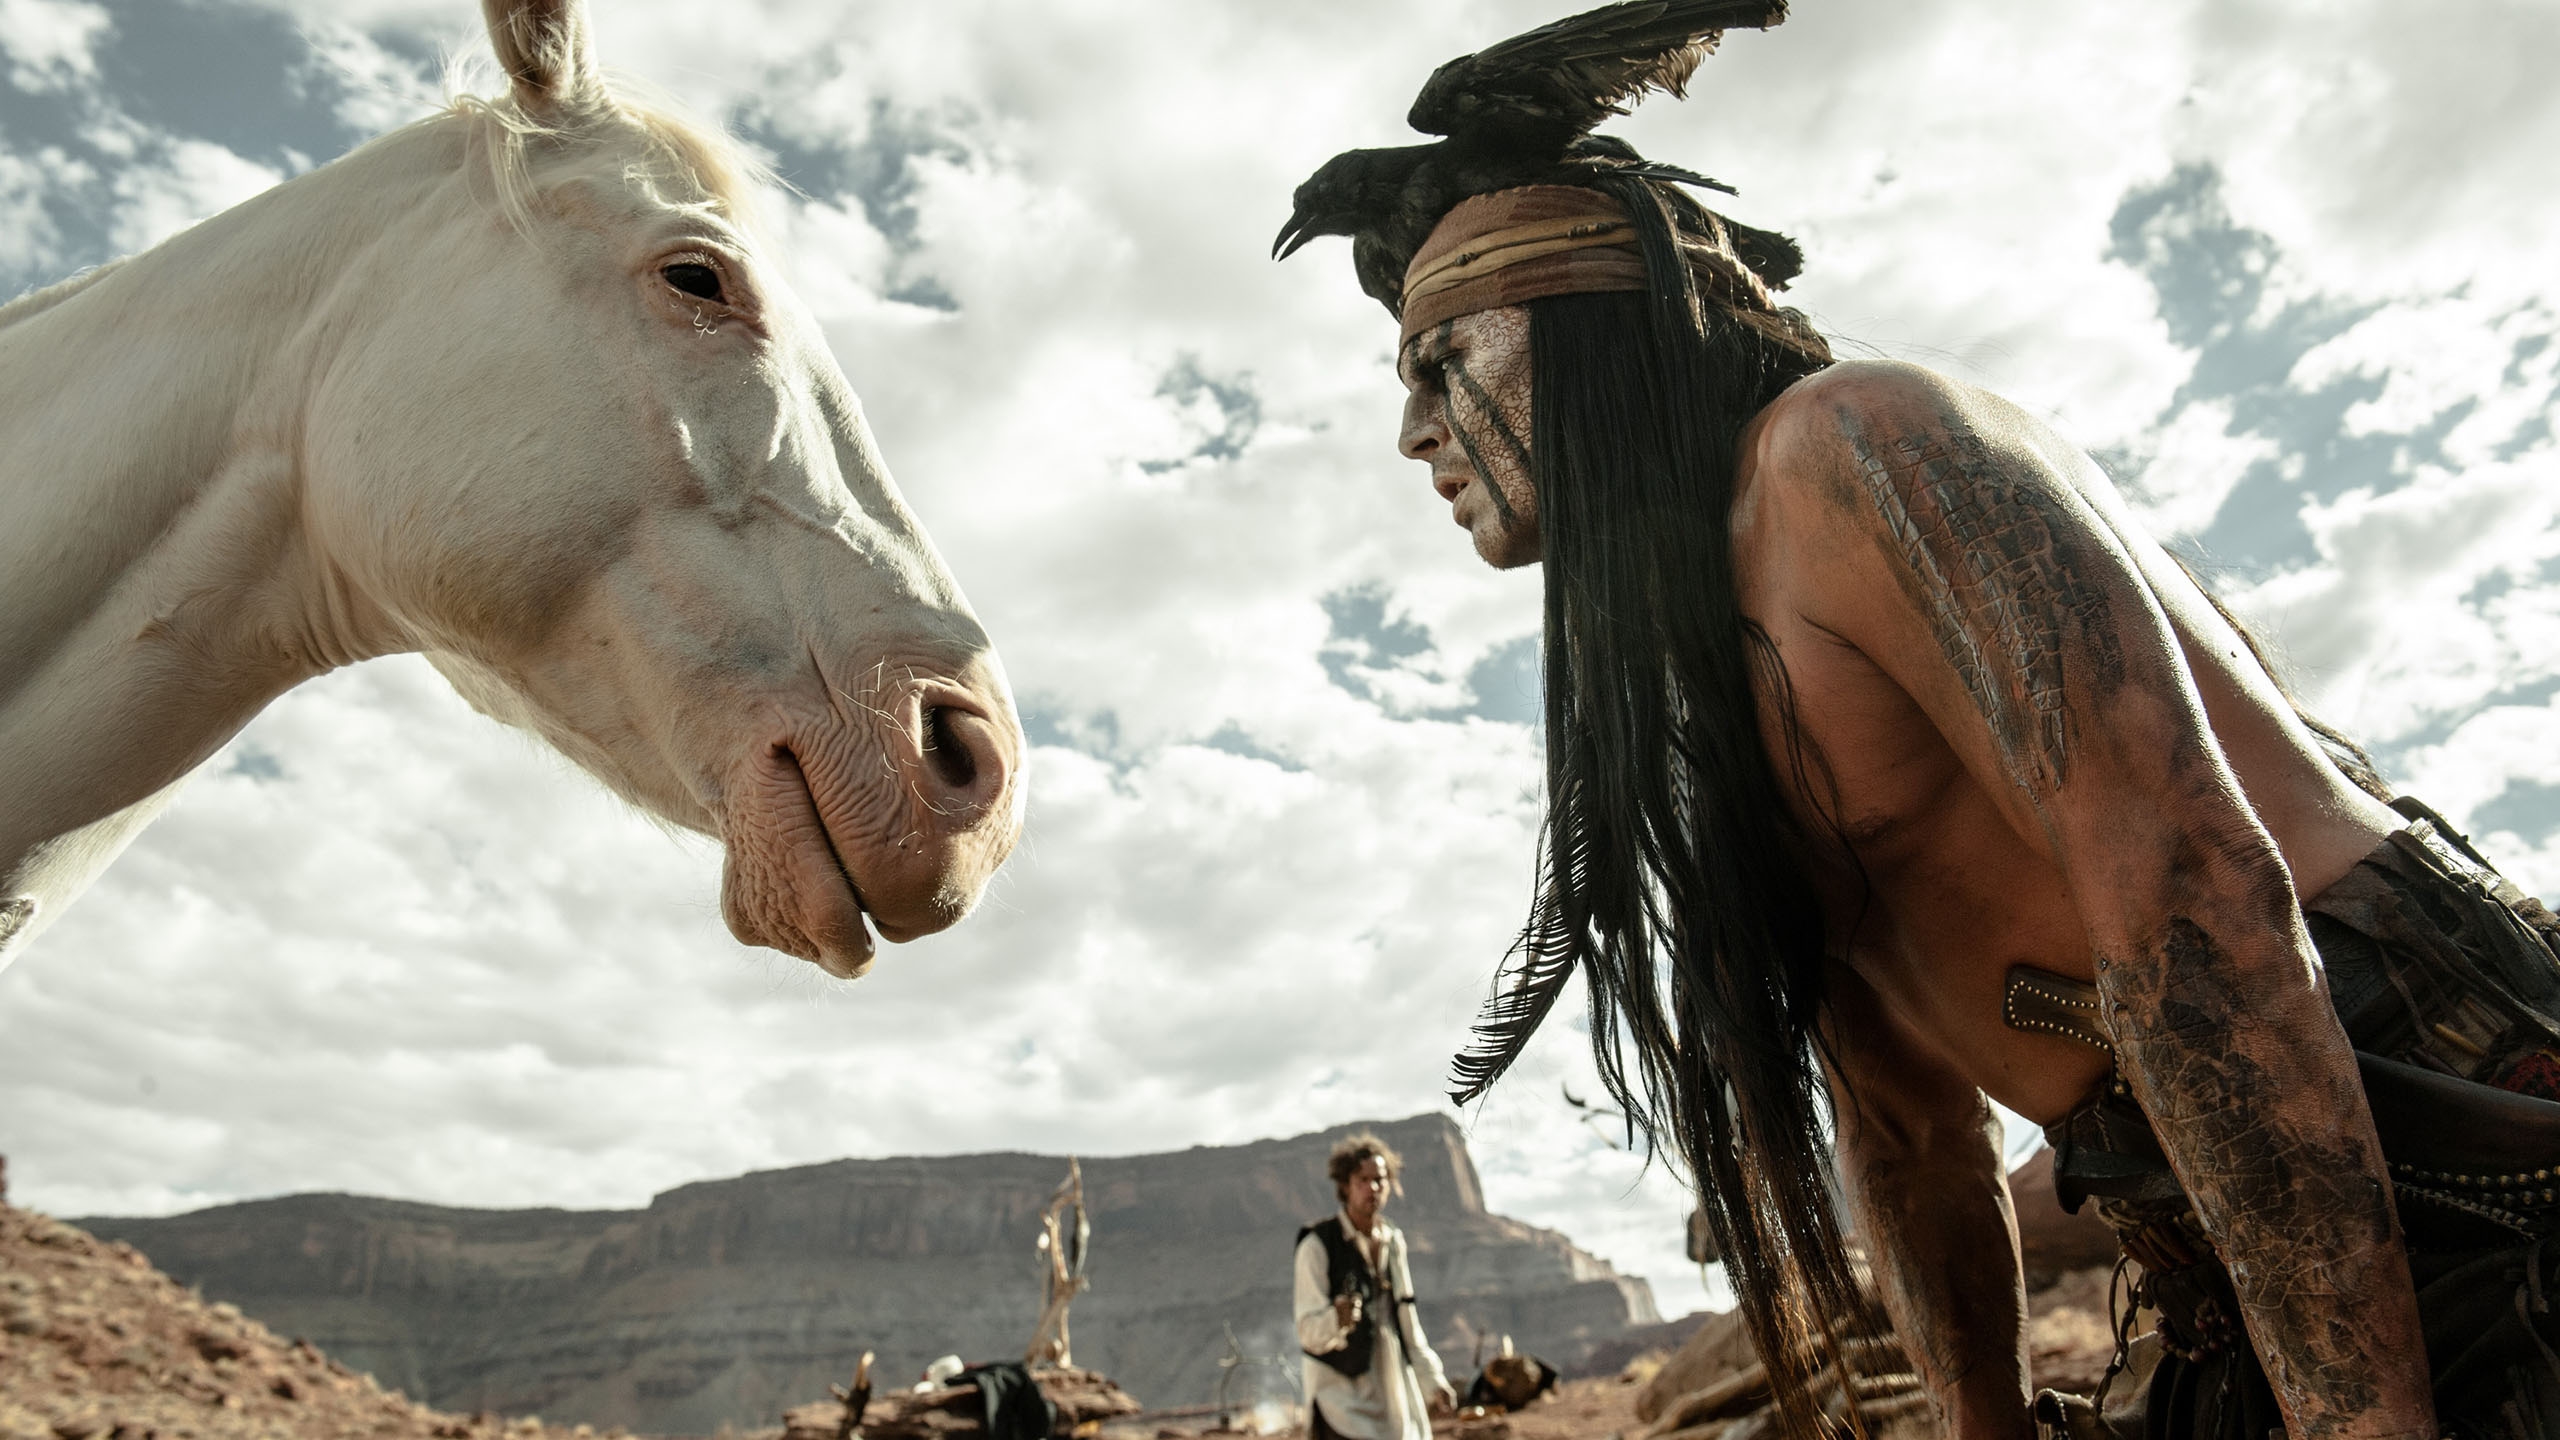 2013 The Lone Ranger Scene for 2560x1440 HDTV resolution